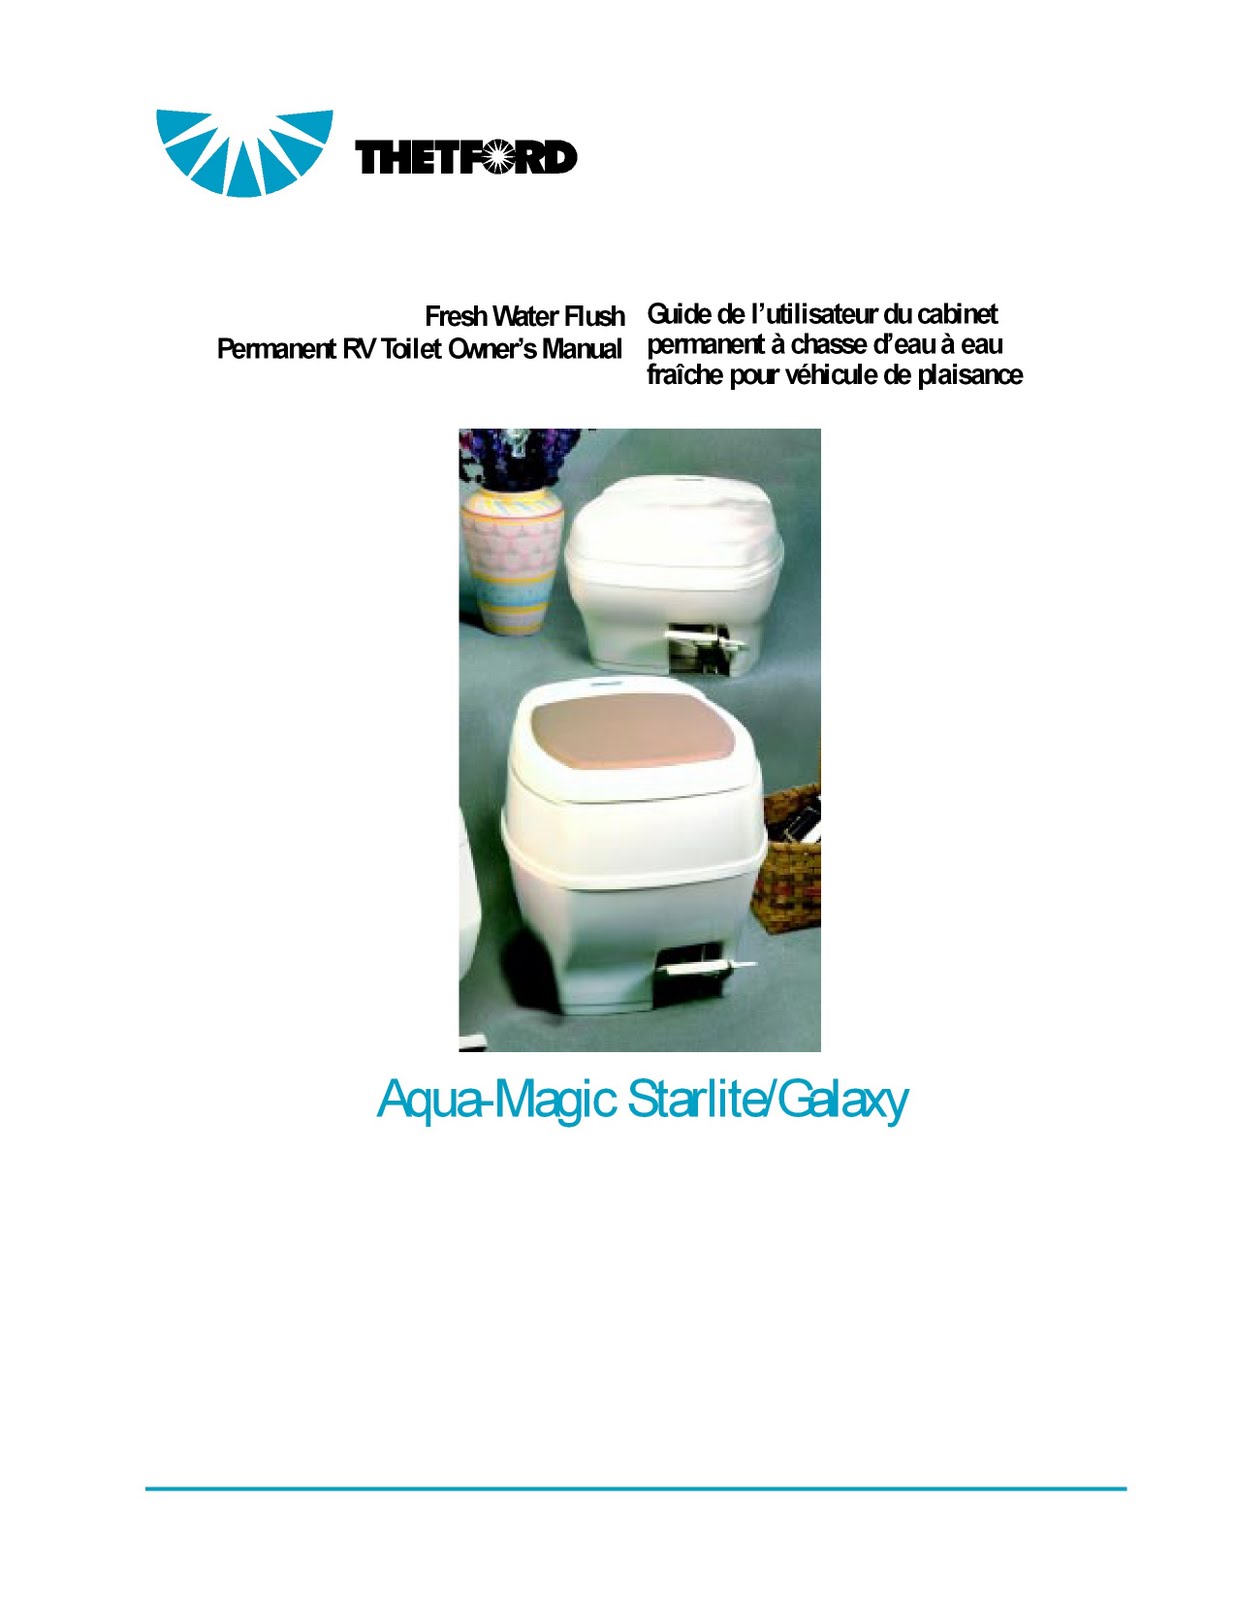 1983 Fleetwood Pace Arrow Owners Manuals: Thetford Aqua-Magic starlite Thetford Rv Toilet Aqua Magic Galaxy Starlite